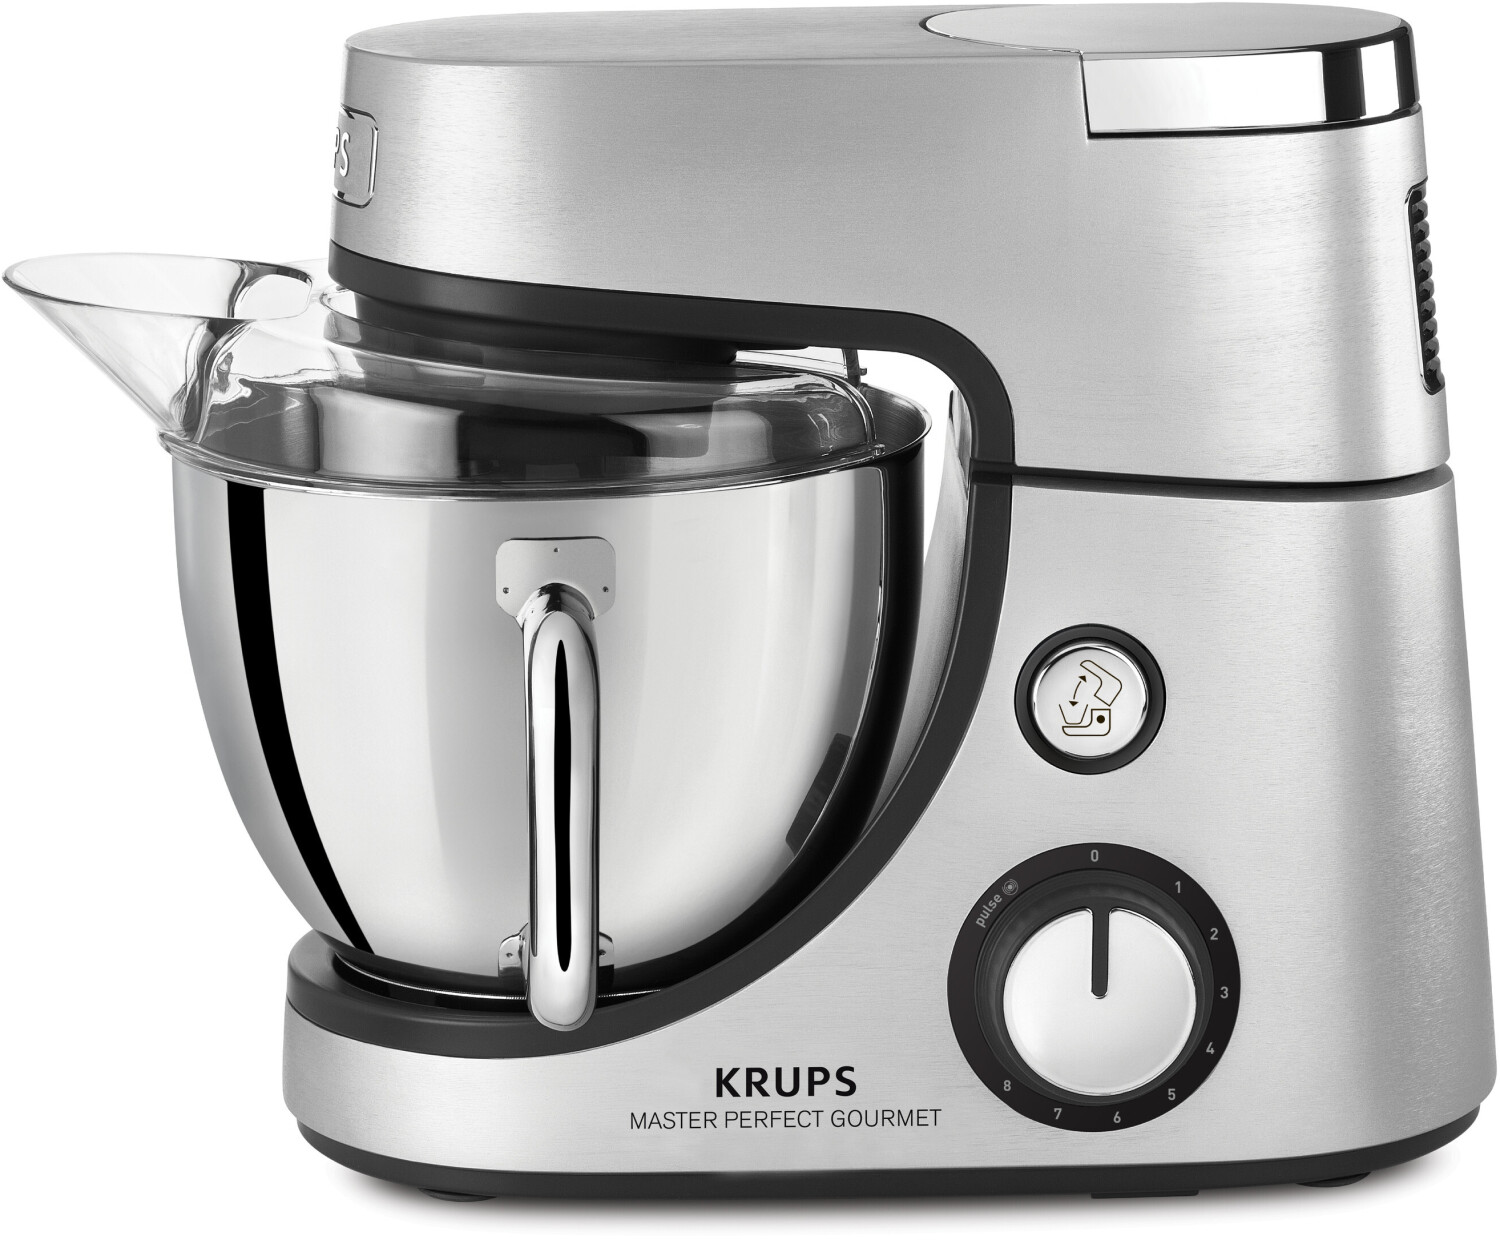 krups-master-perfect-gourmet-ka631d11-1